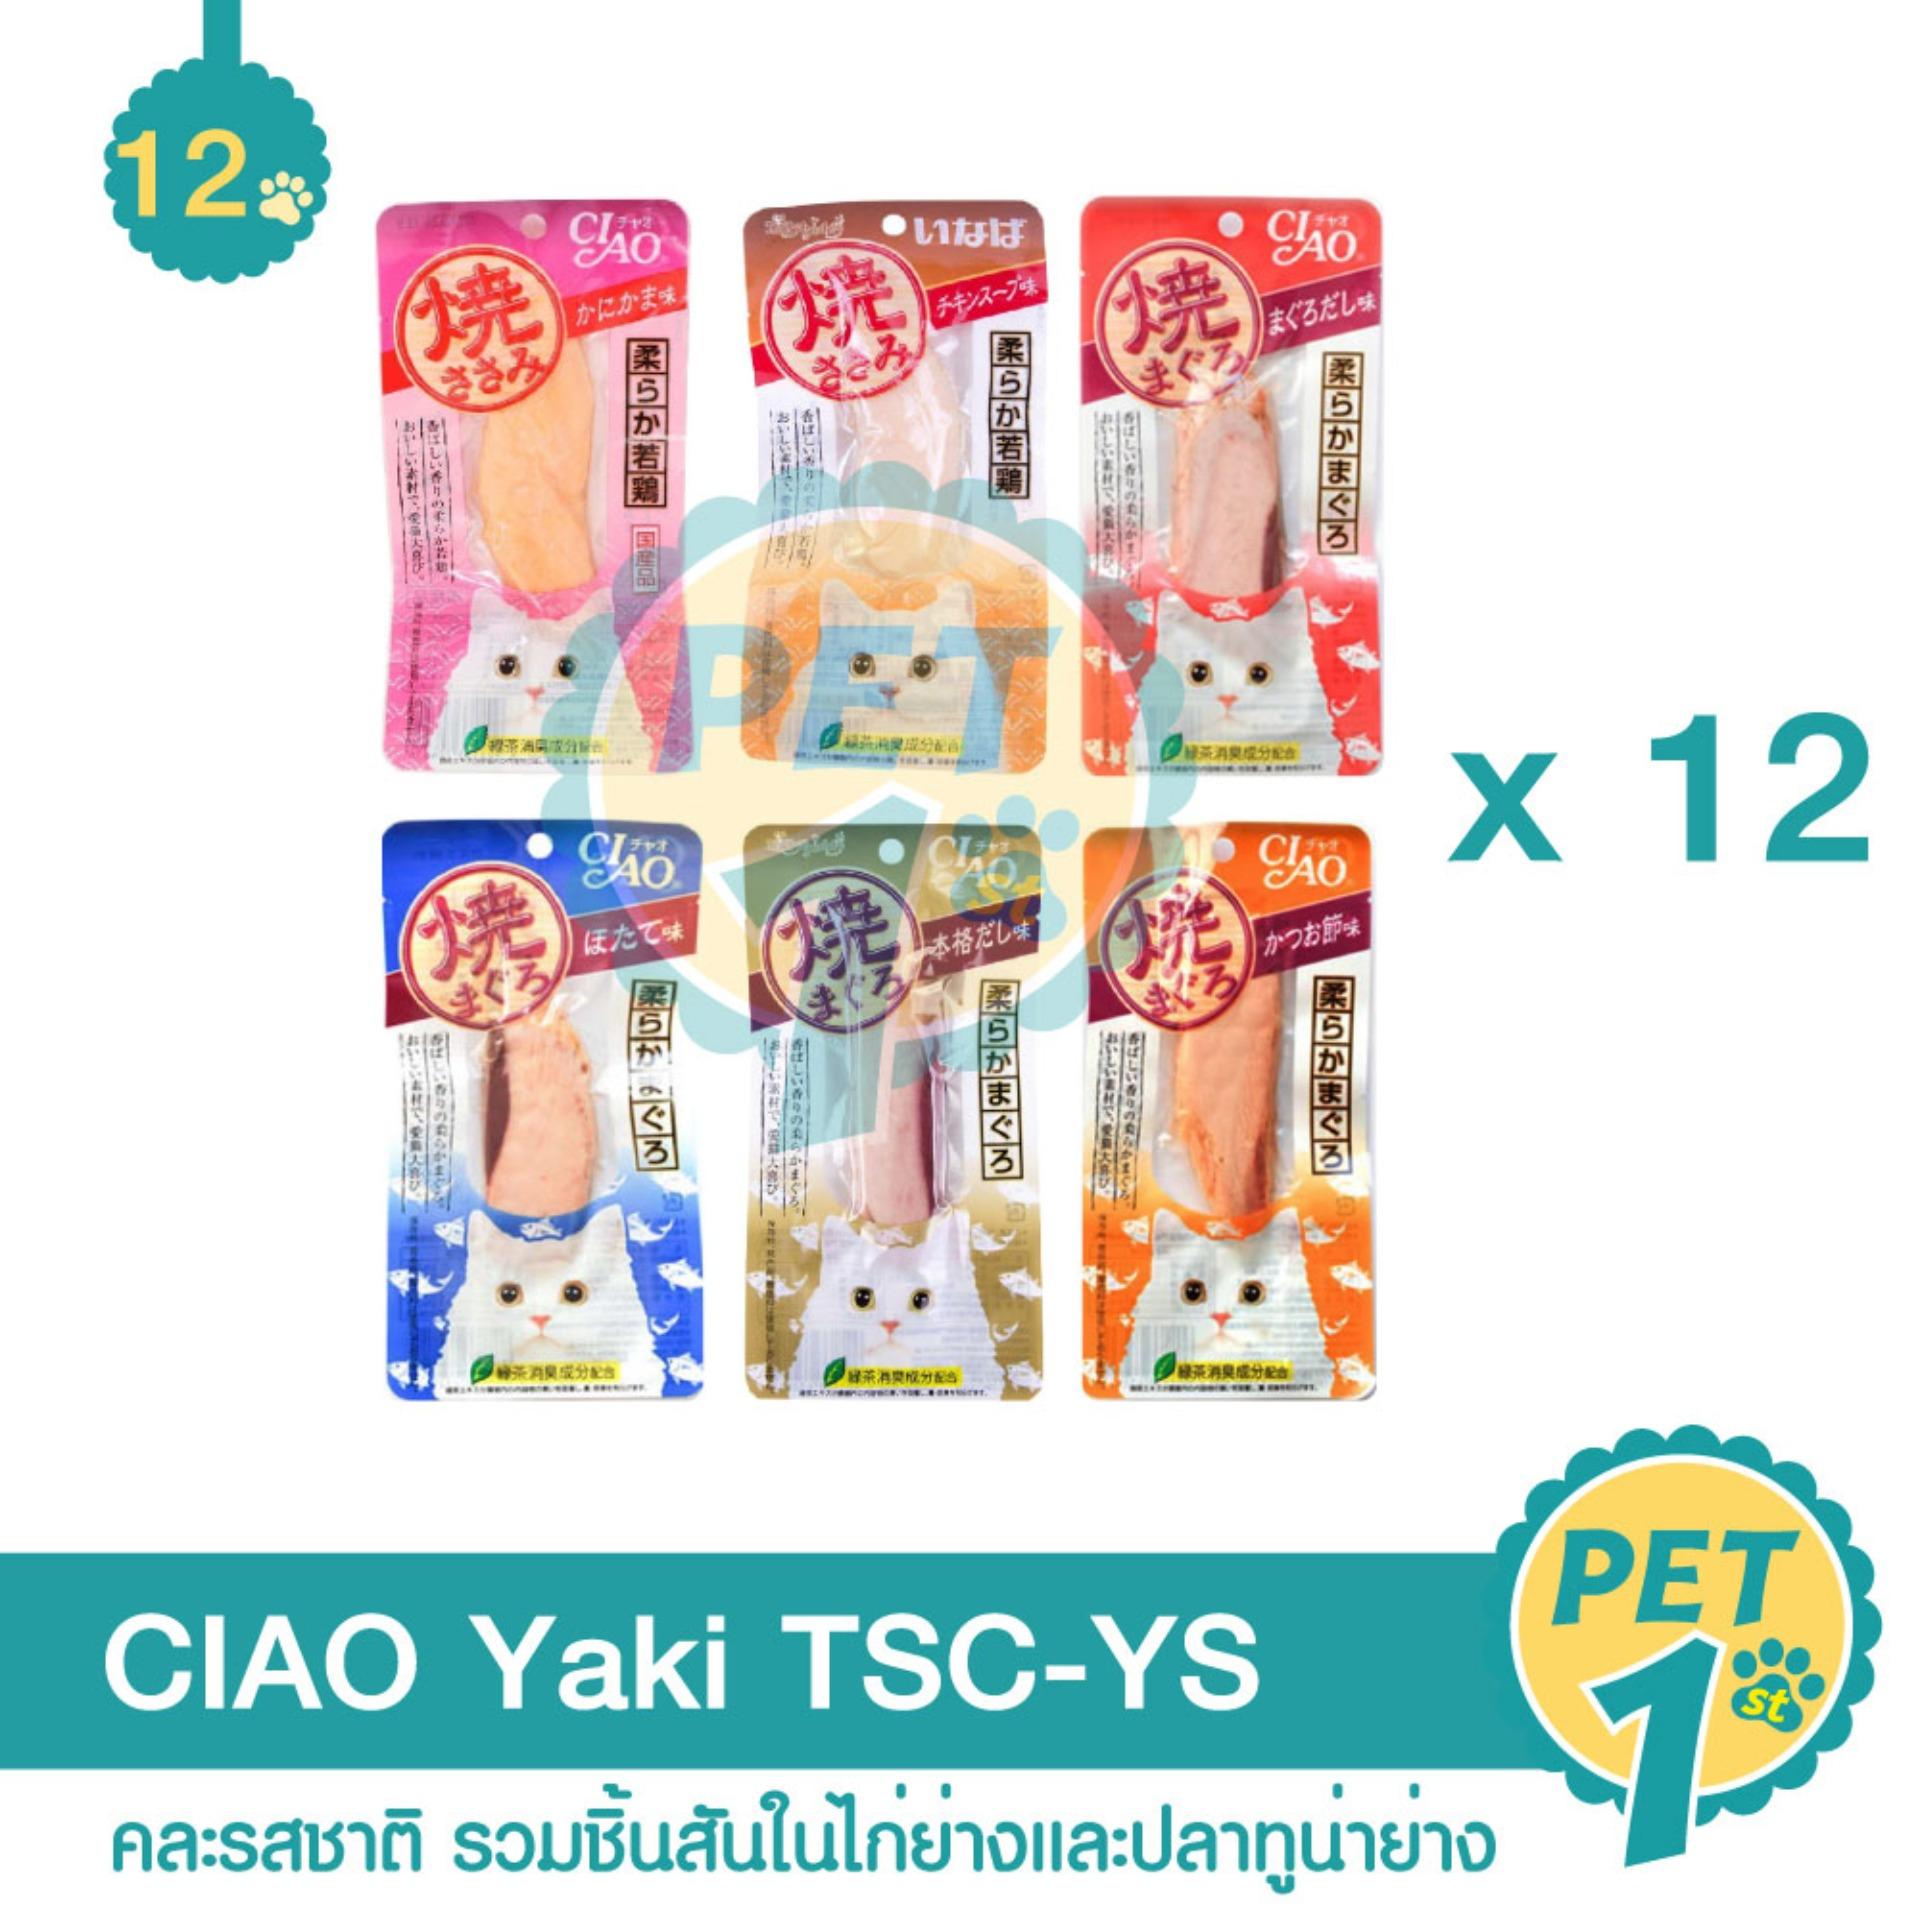 CIAO Yaki ขนมแมว คละรสชาติ รวมชิ้นสันในไก่ย่างและปลาทูน่าย่าง - 12 ชิ้น